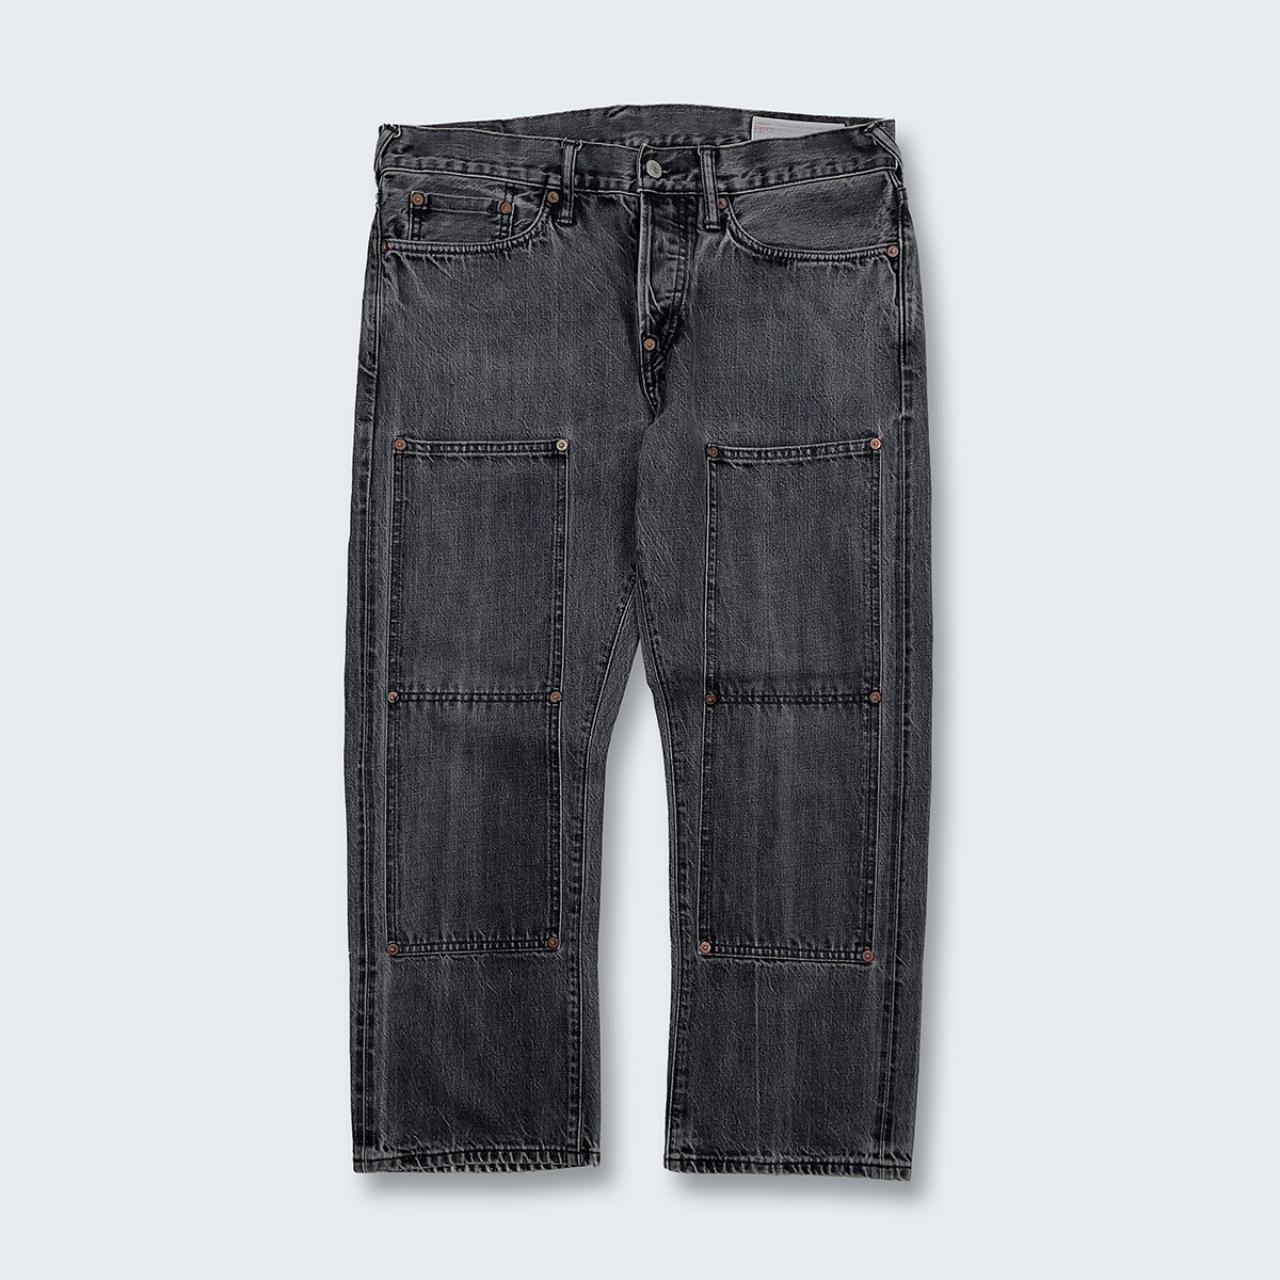 Authentic Vintage Diacock Evisu Jeans  (34")